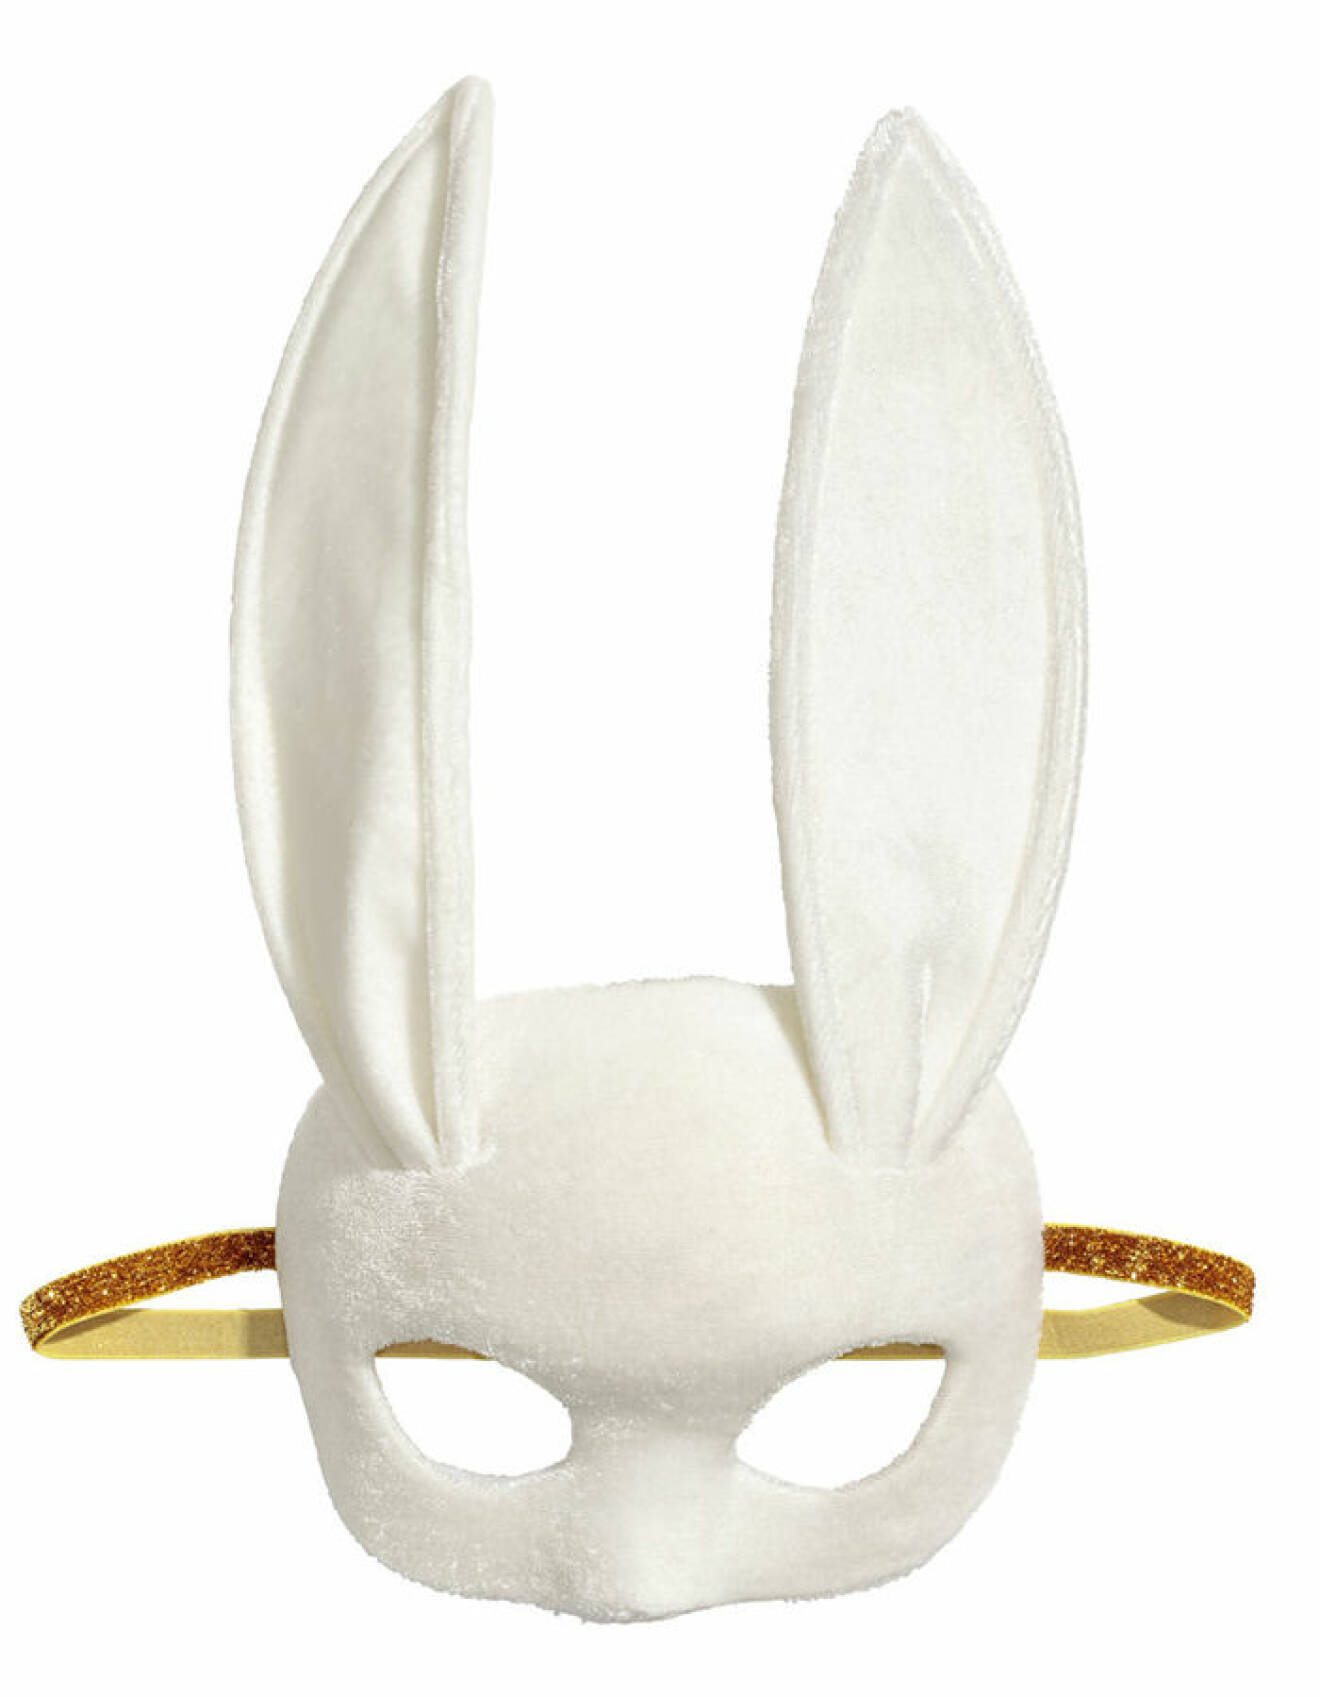 Kaninmask från H&M.